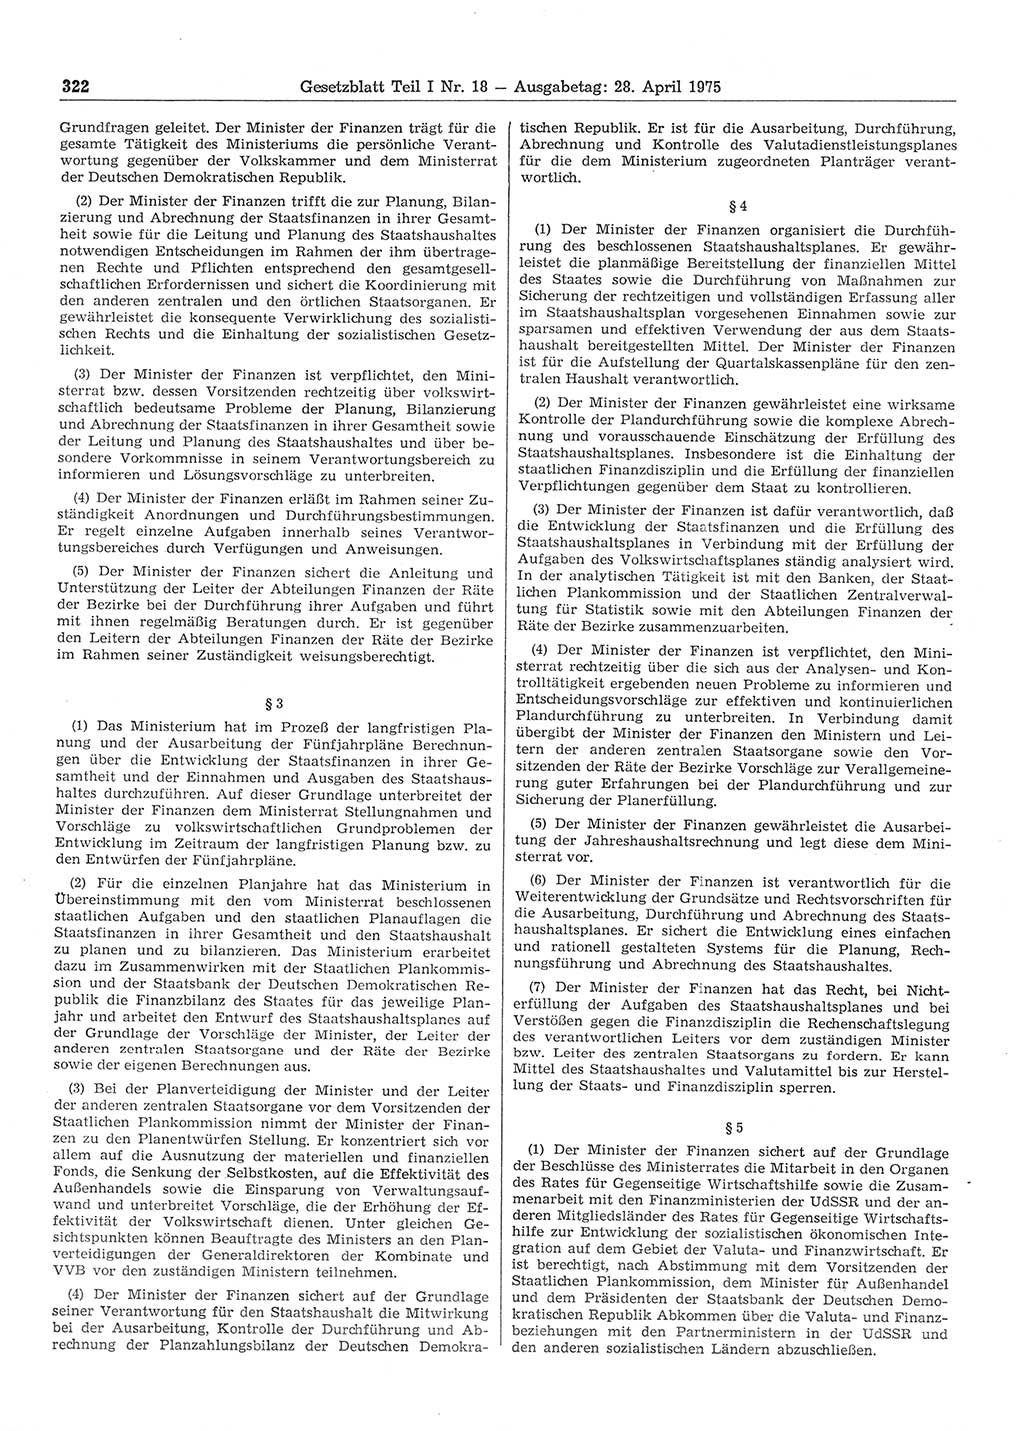 Gesetzblatt (GBl.) der Deutschen Demokratischen Republik (DDR) Teil Ⅰ 1975, Seite 322 (GBl. DDR Ⅰ 1975, S. 322)